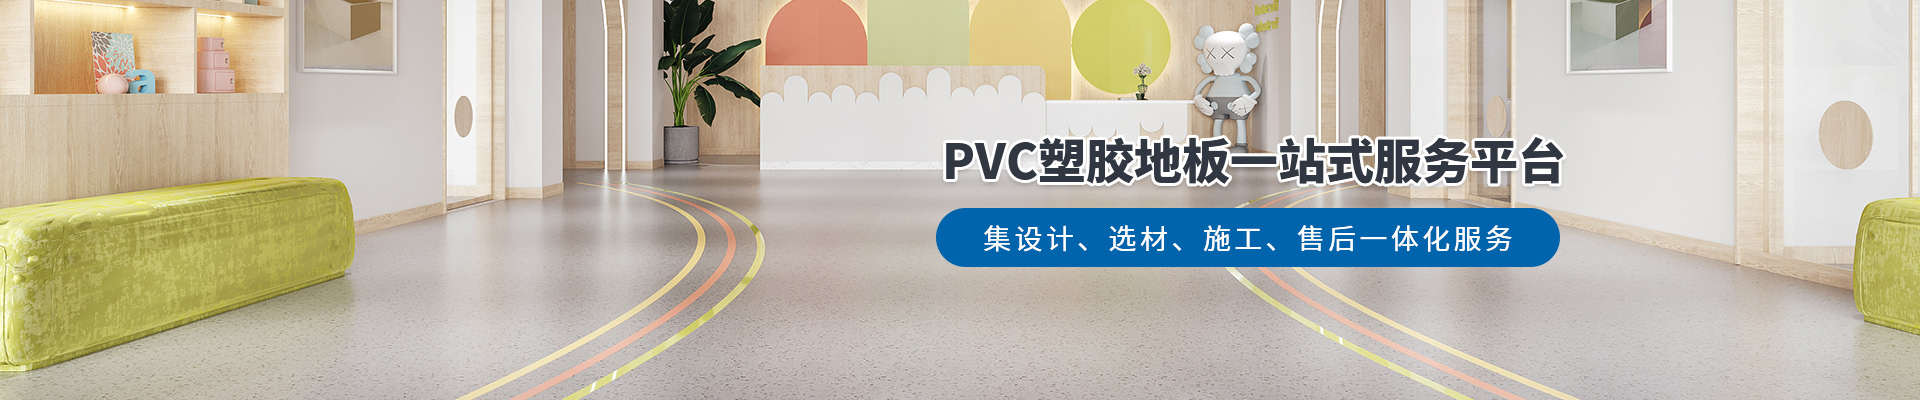 鳳城橡塑，PVC塑膠地板一站式服務平臺